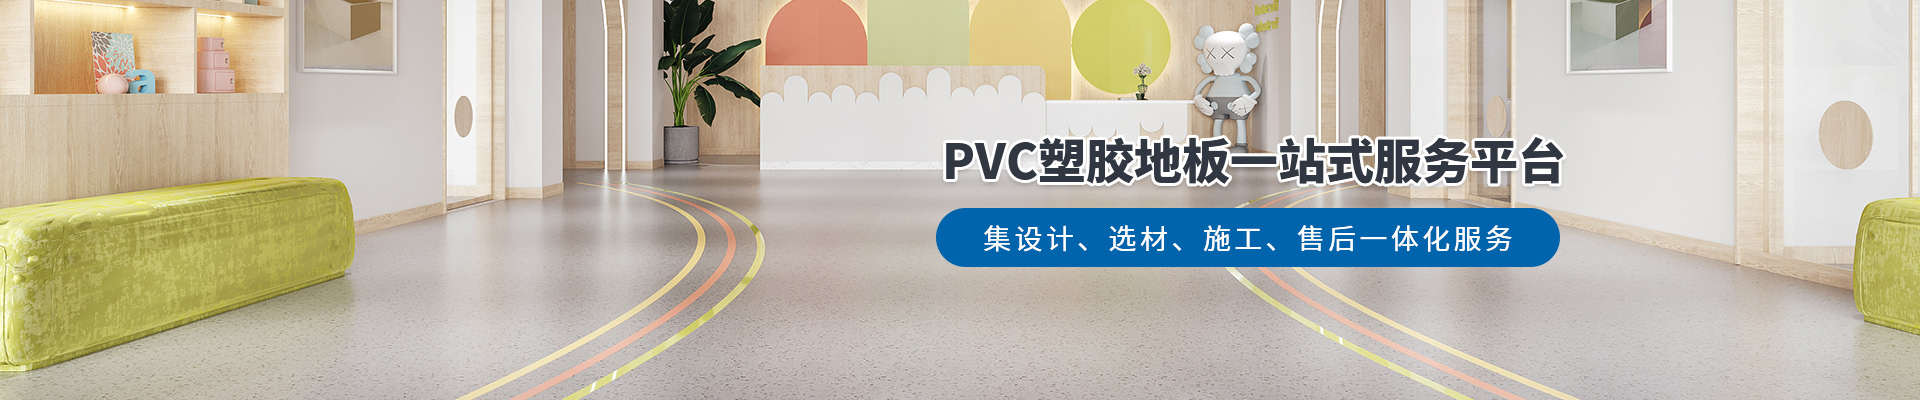 鳳城橡塑，PVC塑膠地板一站式服務平臺